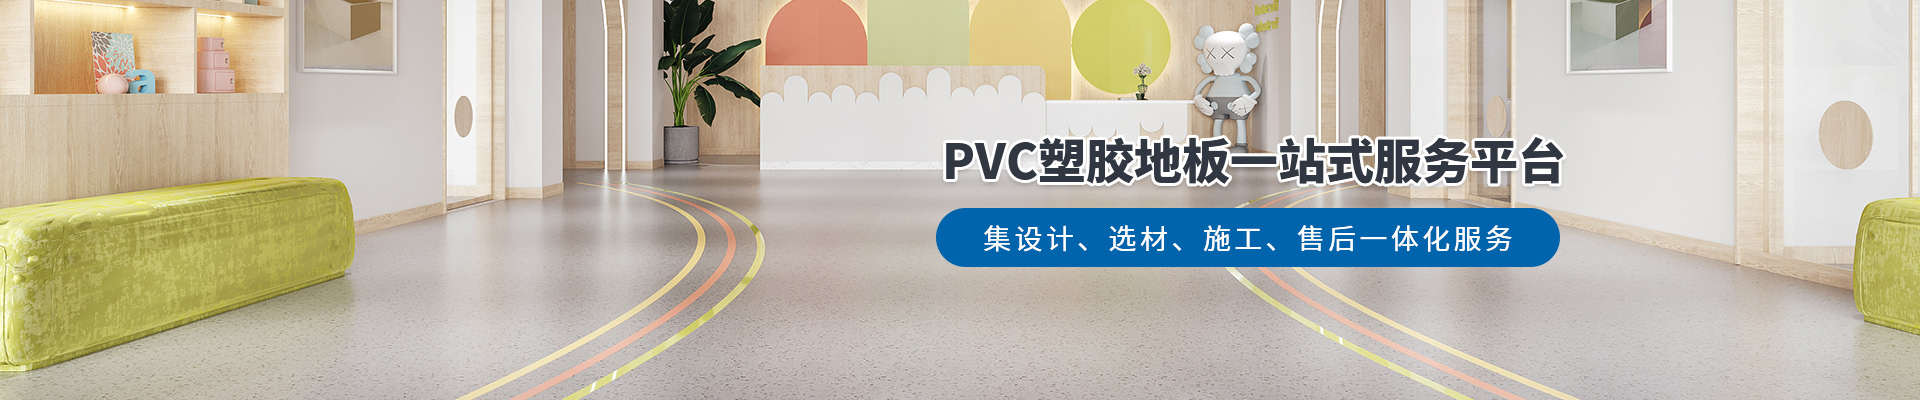 鳳城橡塑，PVC塑膠地板一站式服務平臺